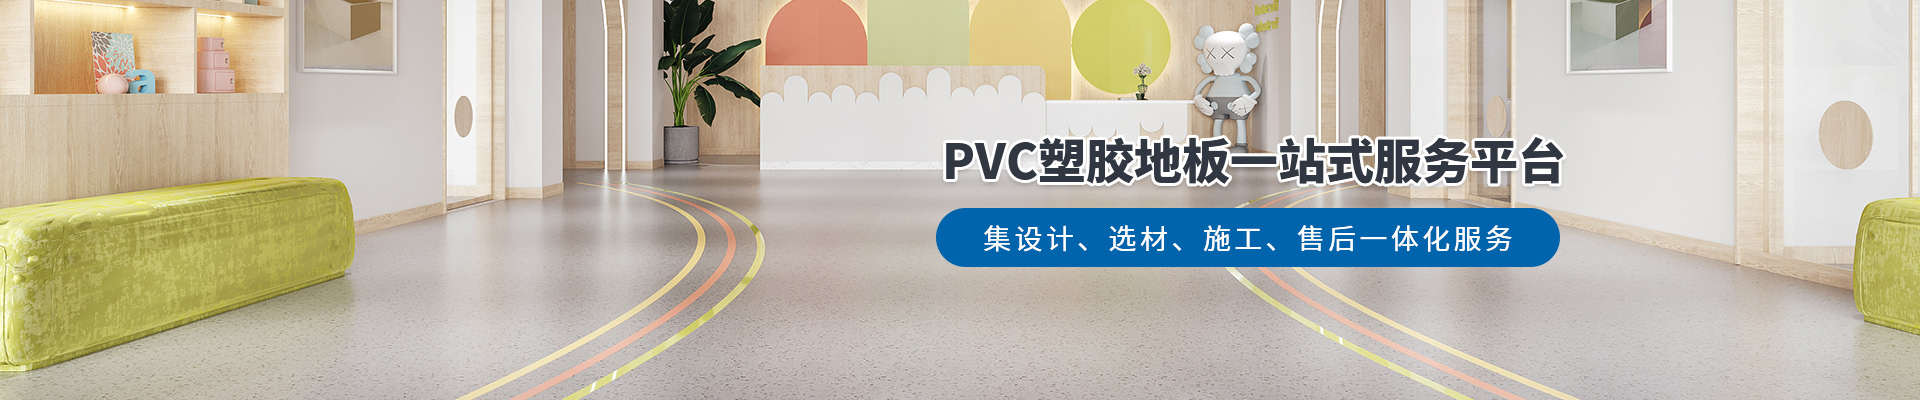 鳳城橡塑，PVC塑膠地板一站式服務平臺